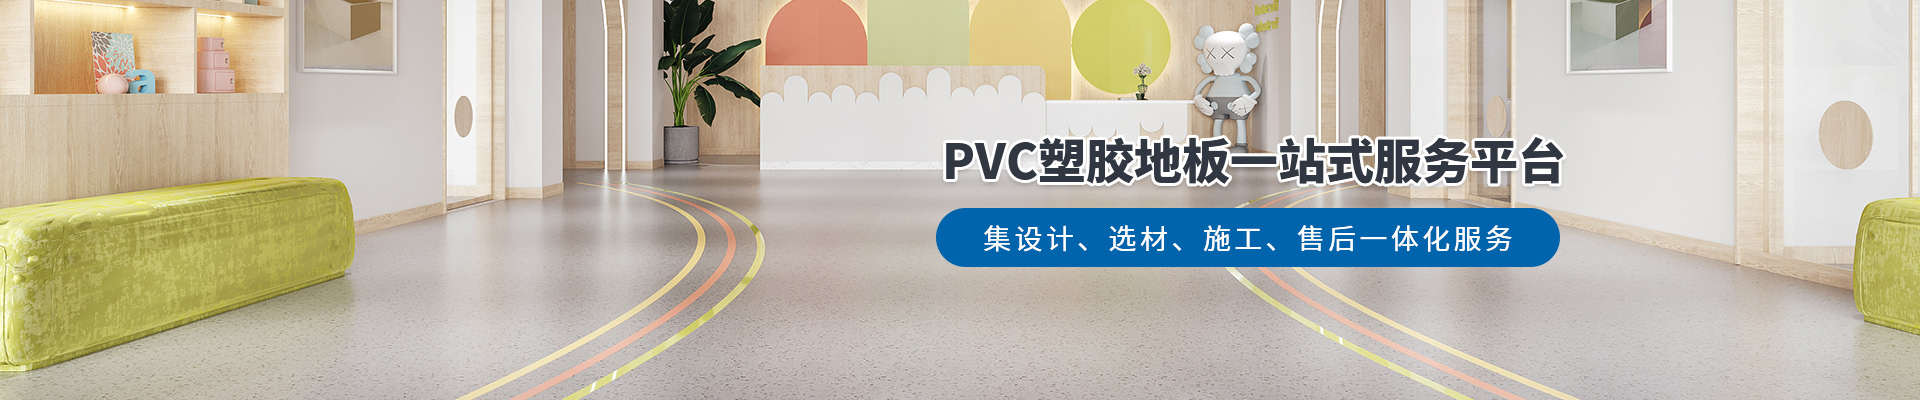 鳳城橡塑，PVC塑膠地板一站式服務平臺